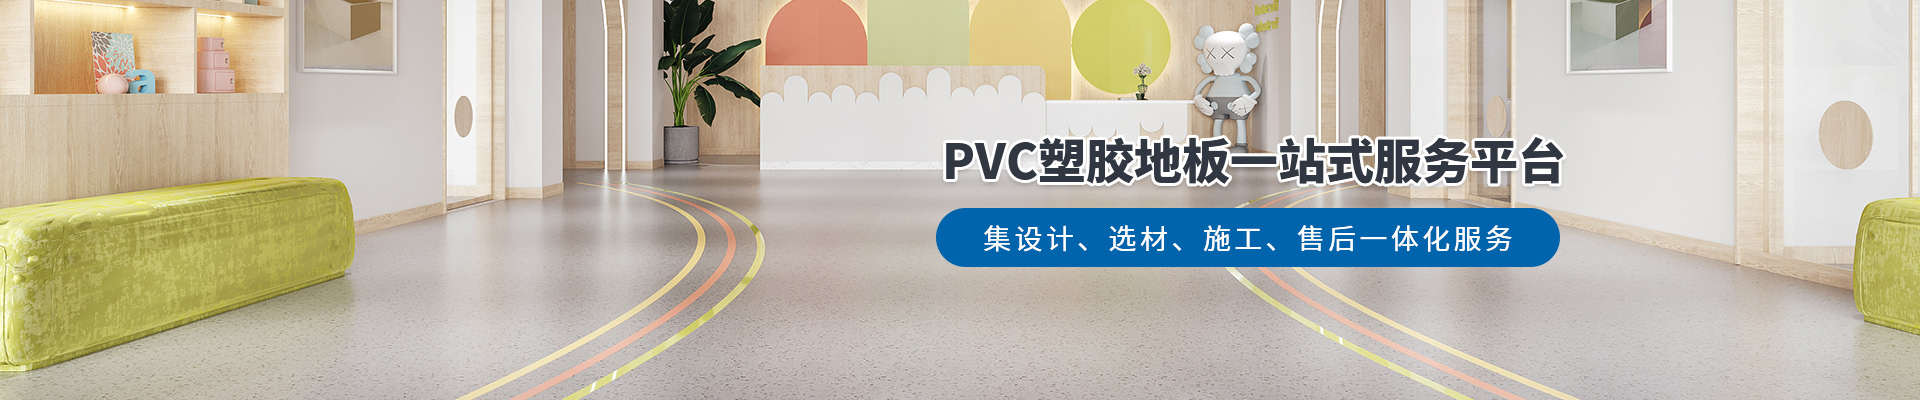 鳳城橡塑，PVC塑膠地板一站式服務平臺